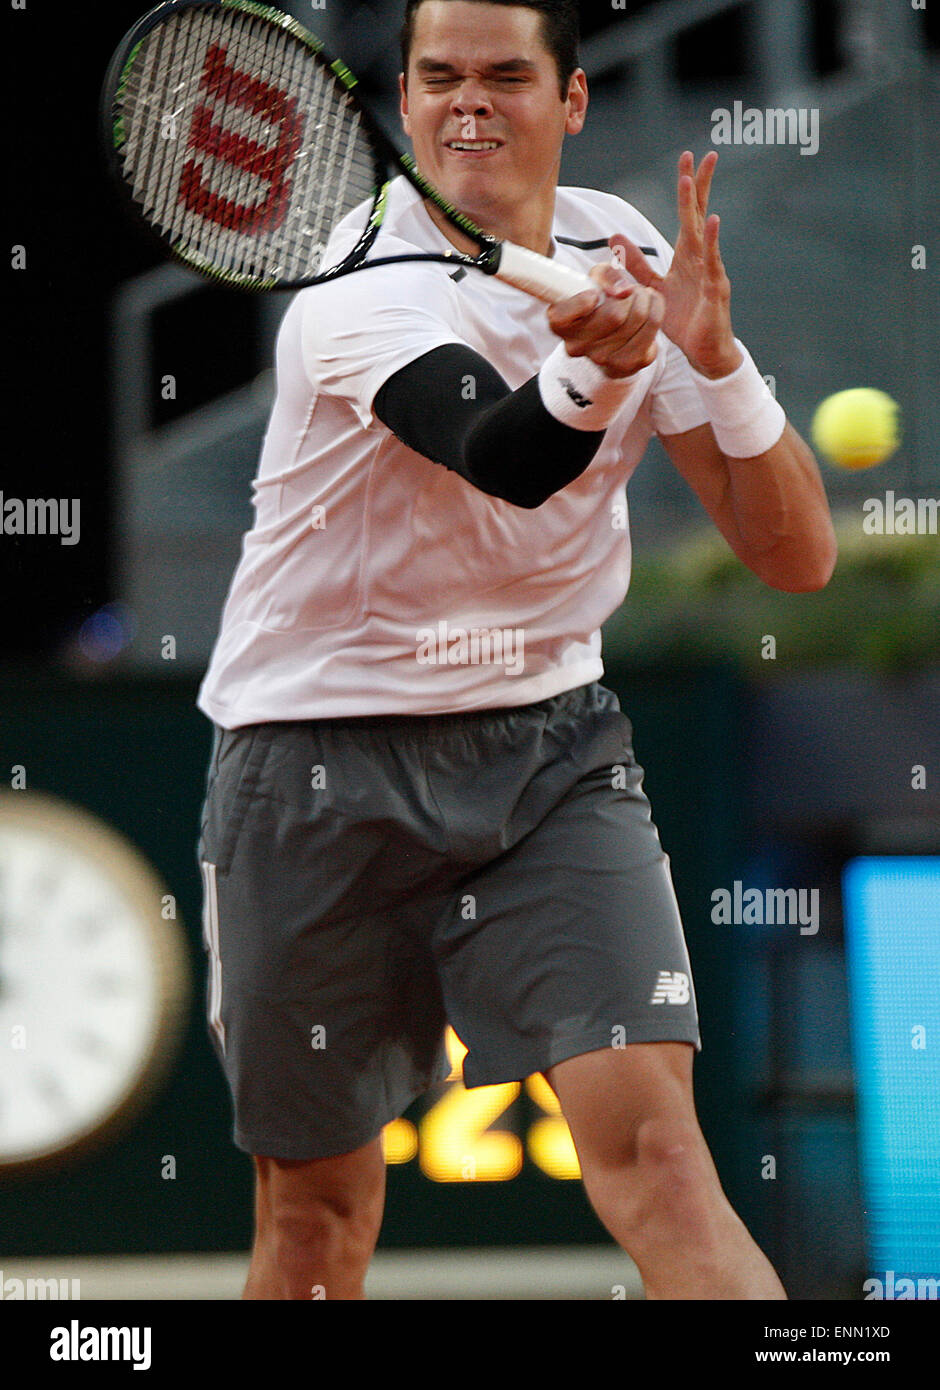 Madrid, Espagne. 8 mai, 2015. Milos Raonic en action contre Andy Murray dans l'Open de tennis de Madrid. Credit : Jimmy Whhittee/Alamy Live News Banque D'Images